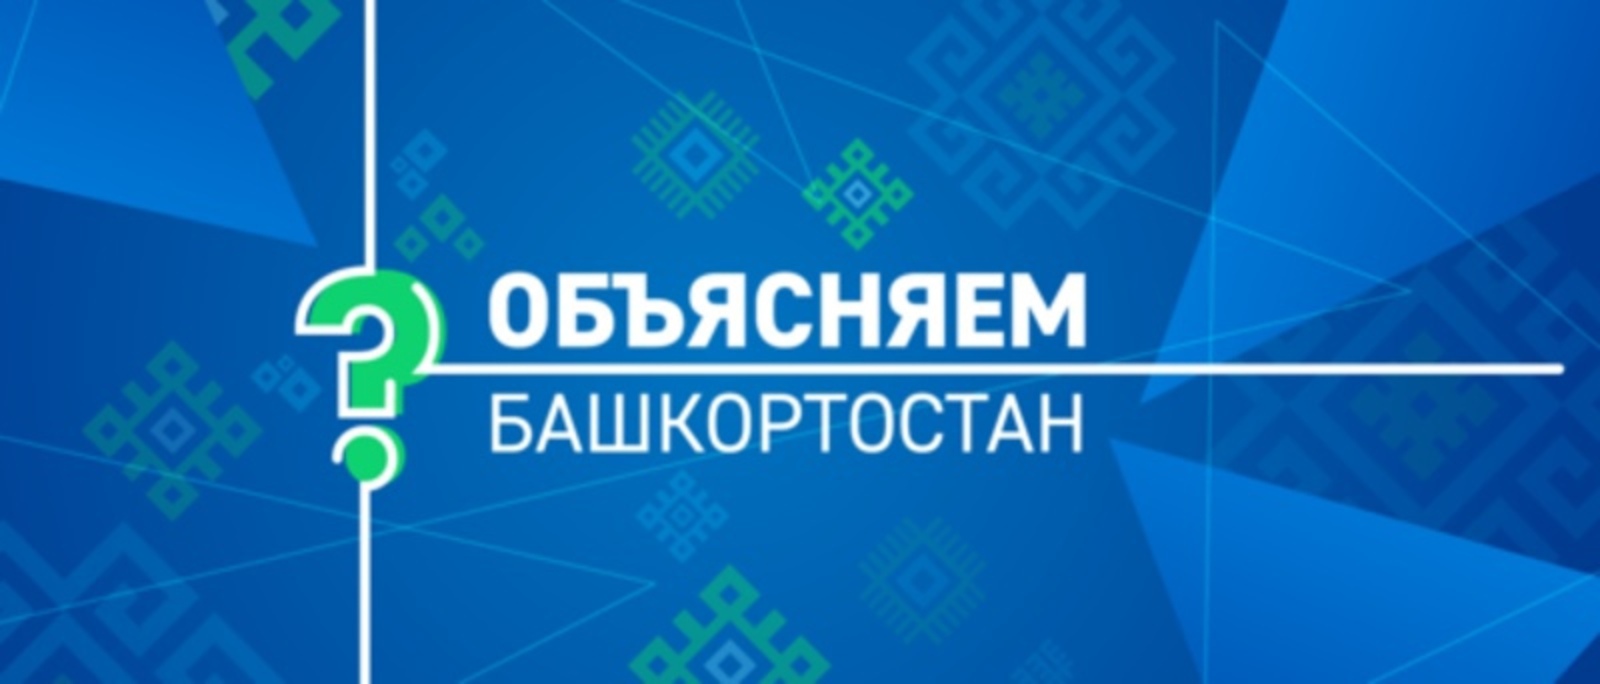 В Башкирии появился чат-бот «Помощник Объясняем.Башкортостан»